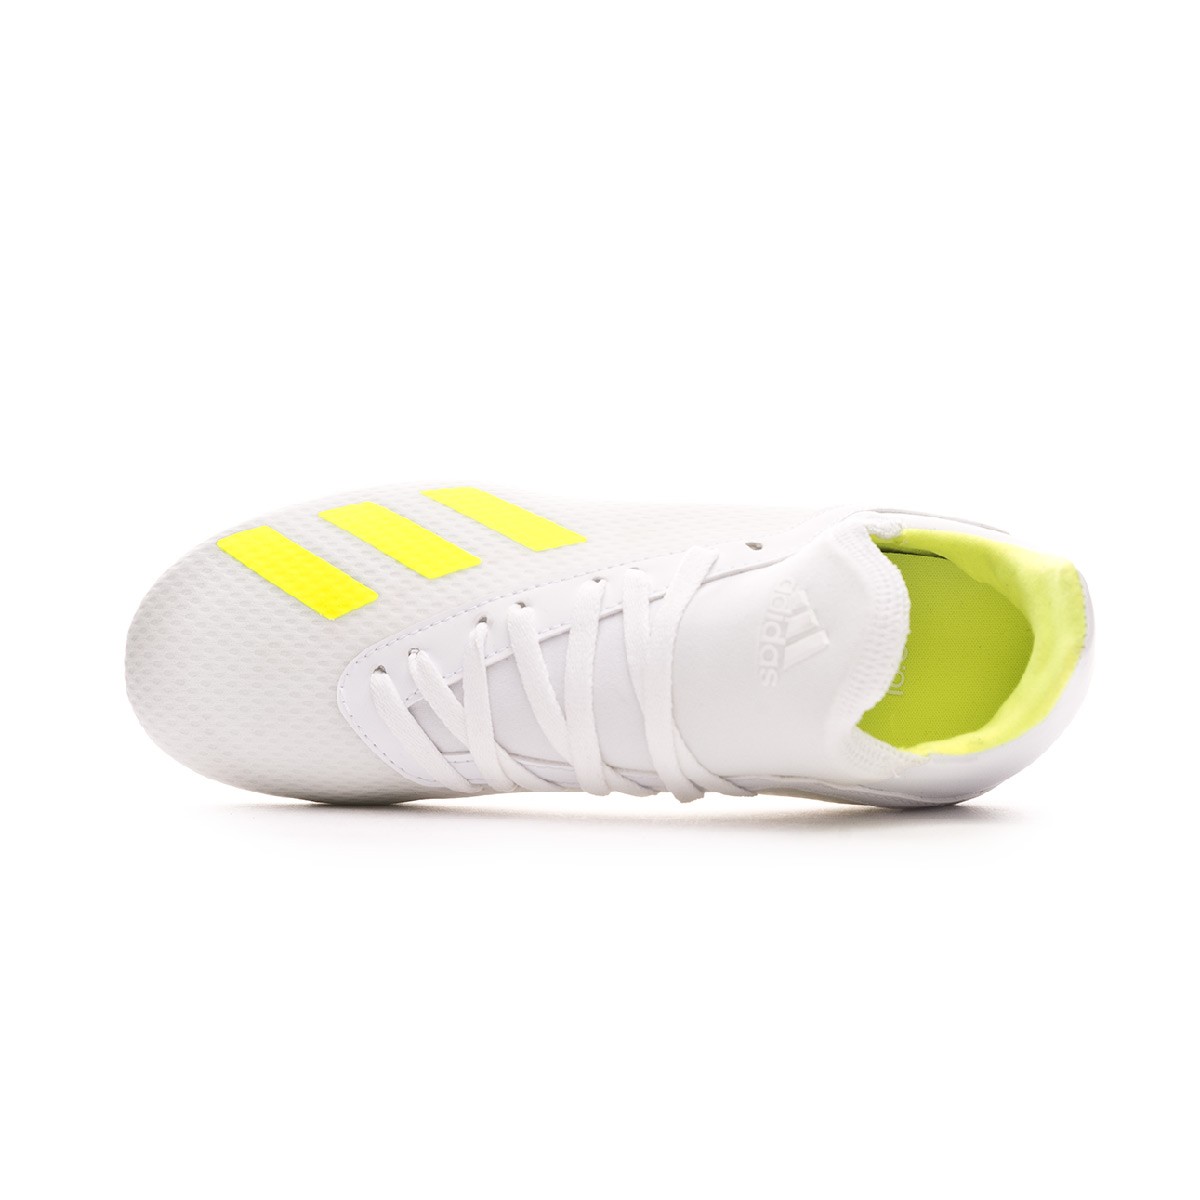 Football Boots Adidas Kids X 18 3 Fg White Solar Yellow White